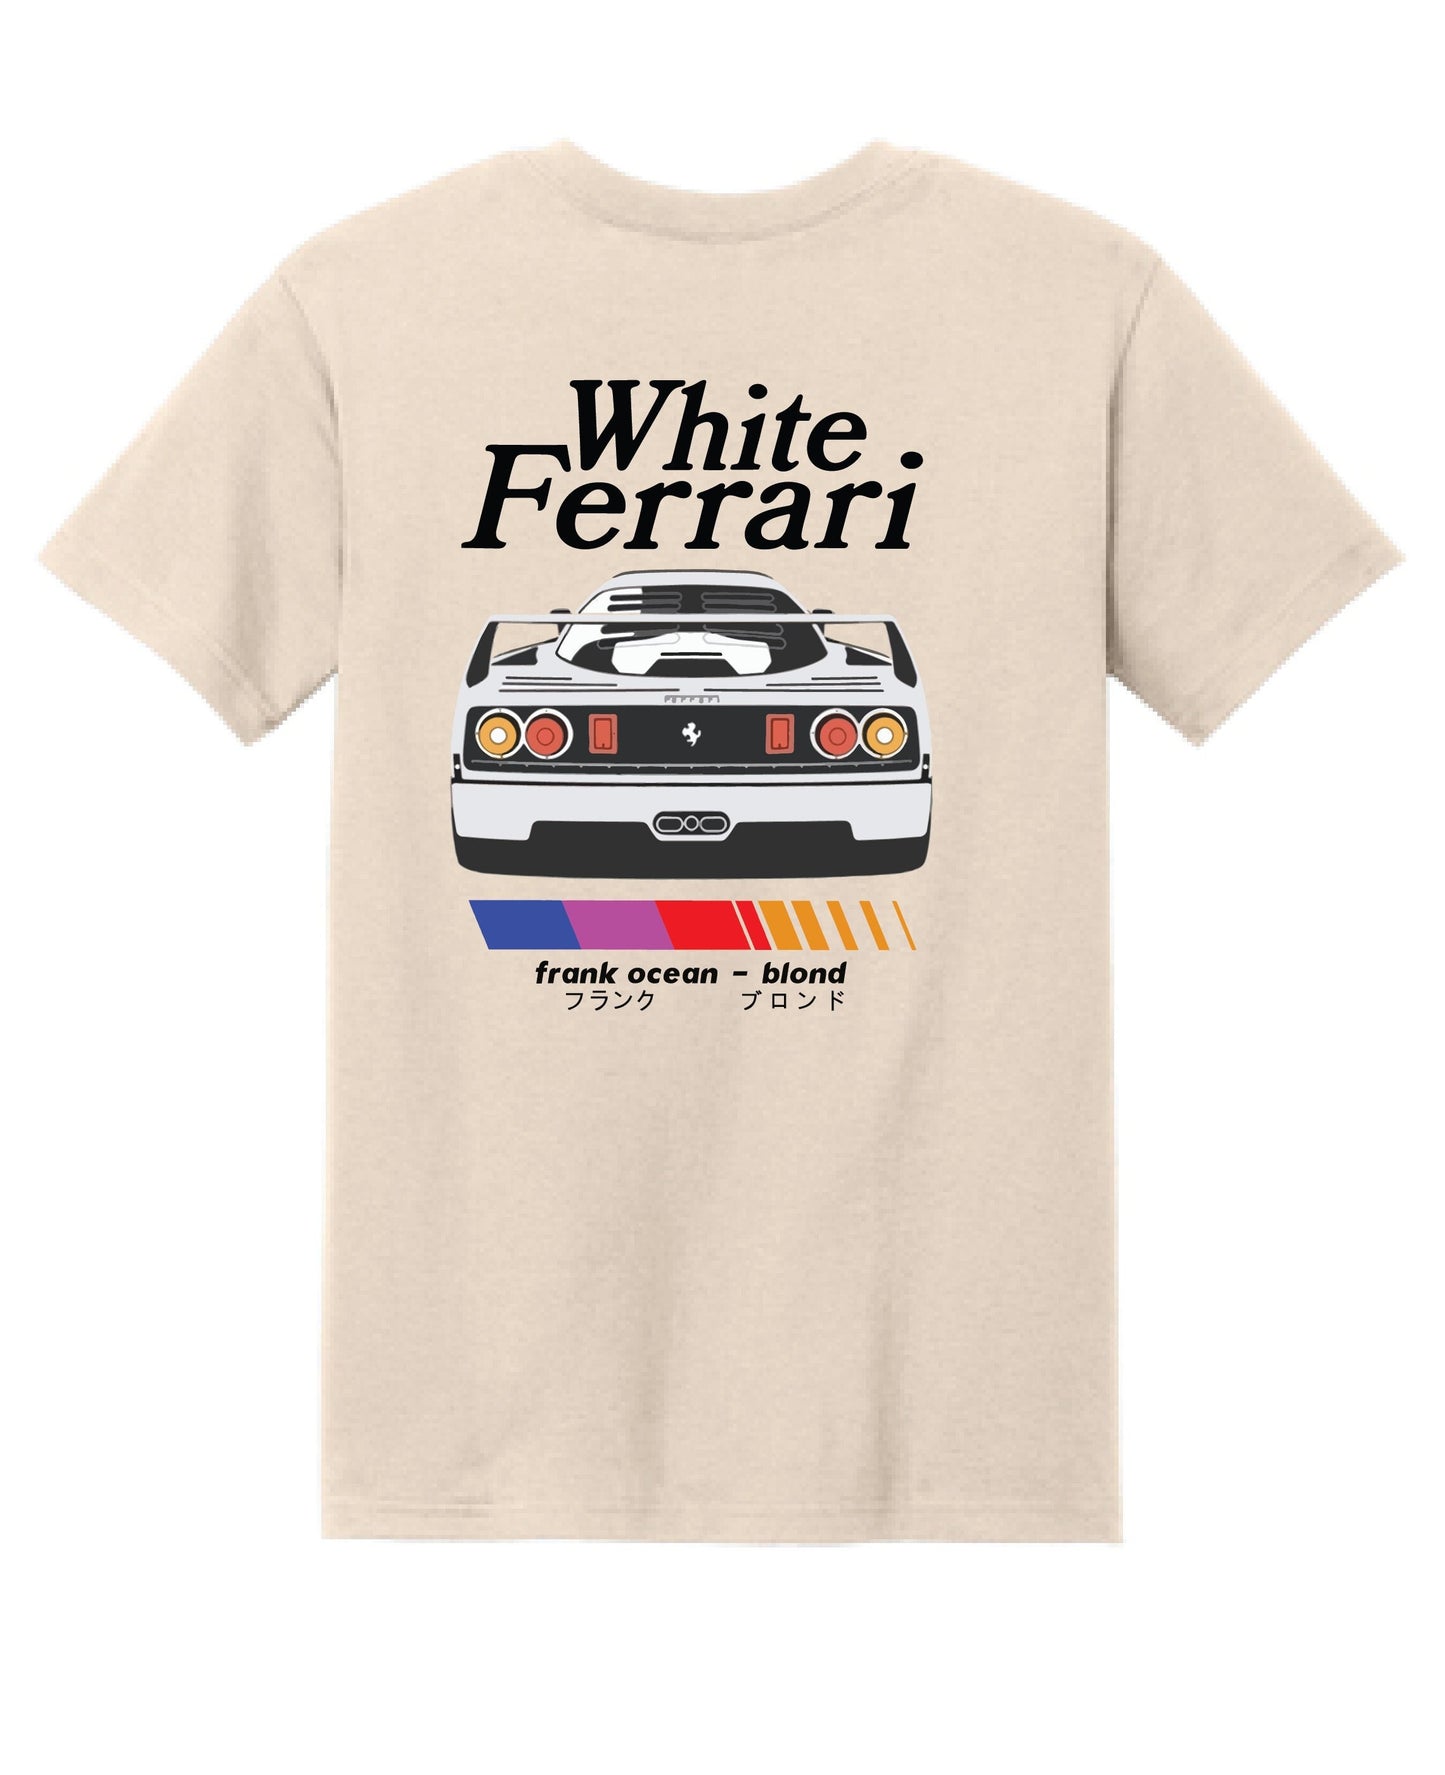 Frank Ocean T-Shirt | Blond Frank Ocean T-Shirt | Frank Ocean Blond White Ferrari | Music T-Shirt | Gift | Blond Album | Music T-shirt Gift